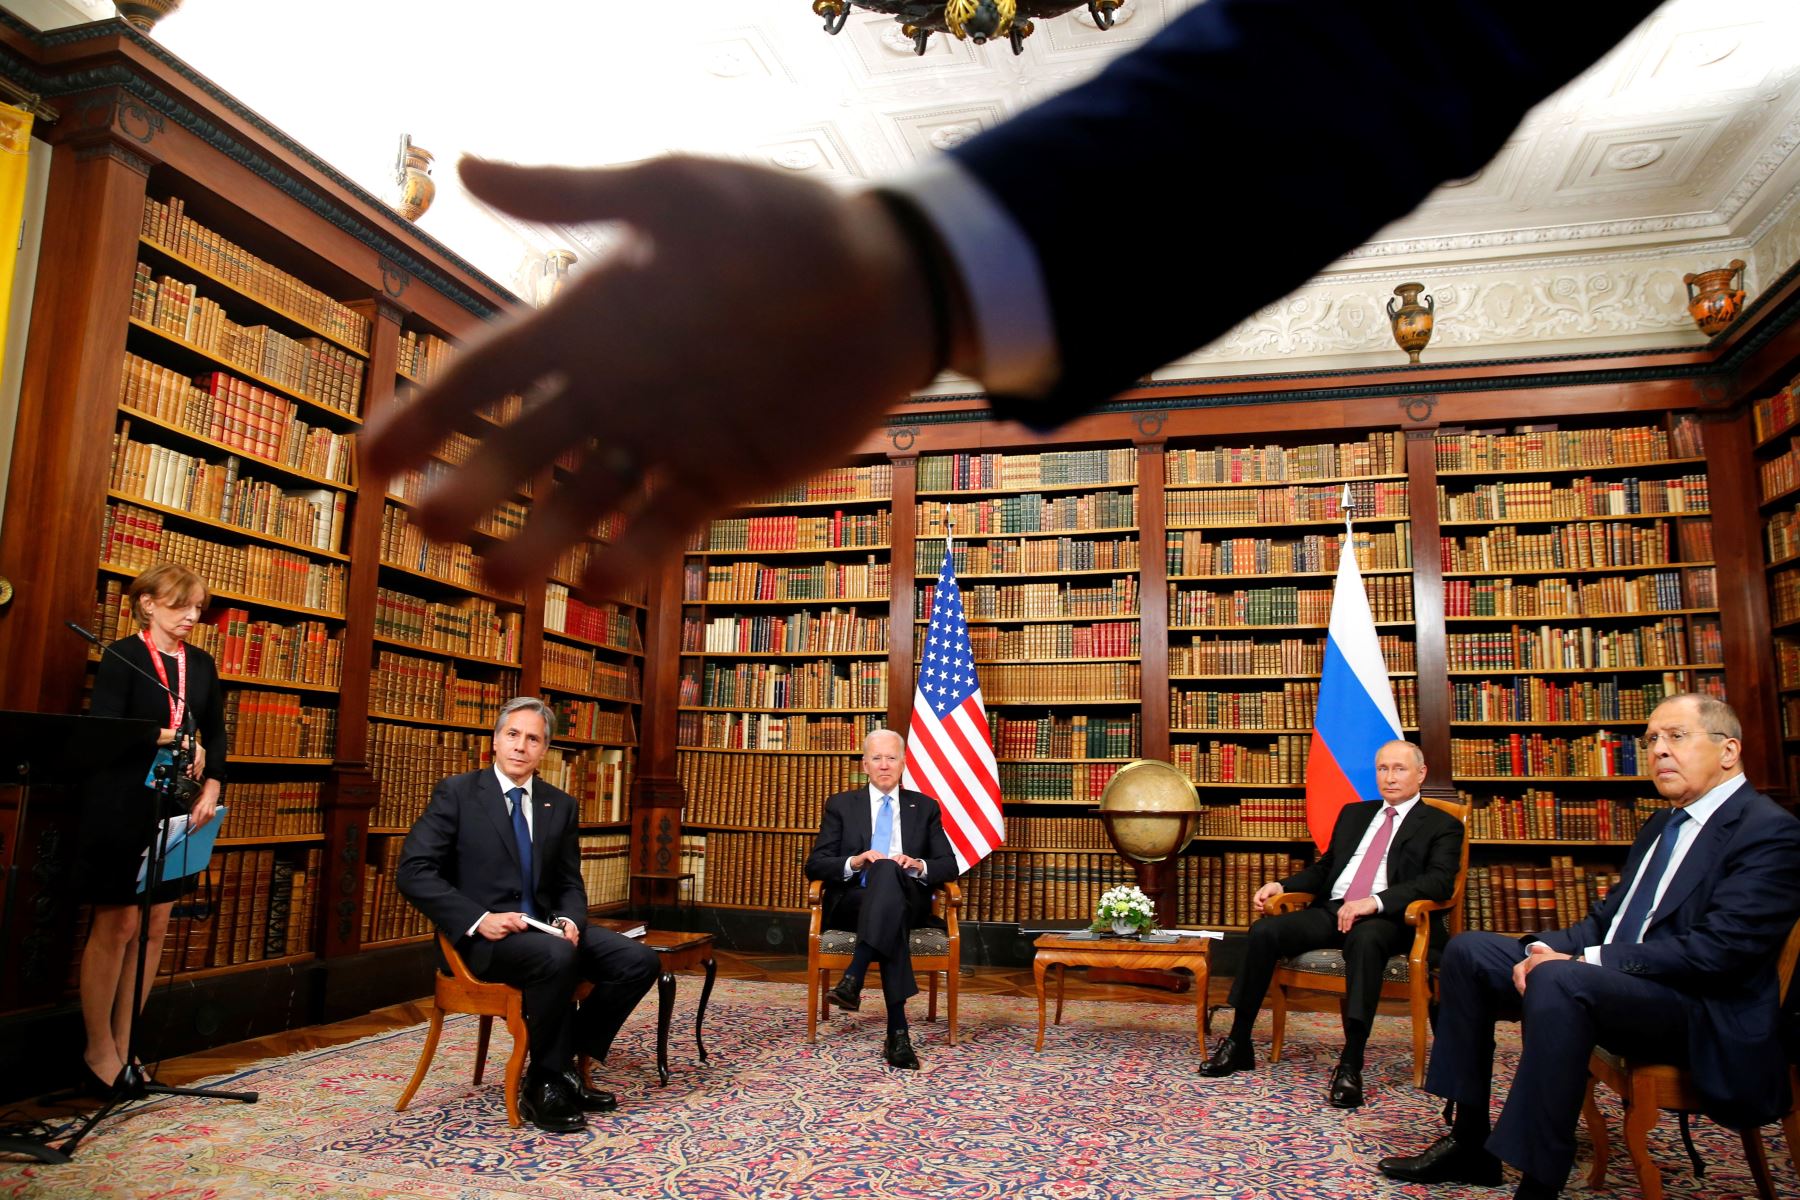 La primera ronda de conversaciones, en una de las bibliotecas, incluye a los ministros de Exteriores, el estadounidense Antony Blinken y el ruso Serguéi Lavrov. Foto: AFP